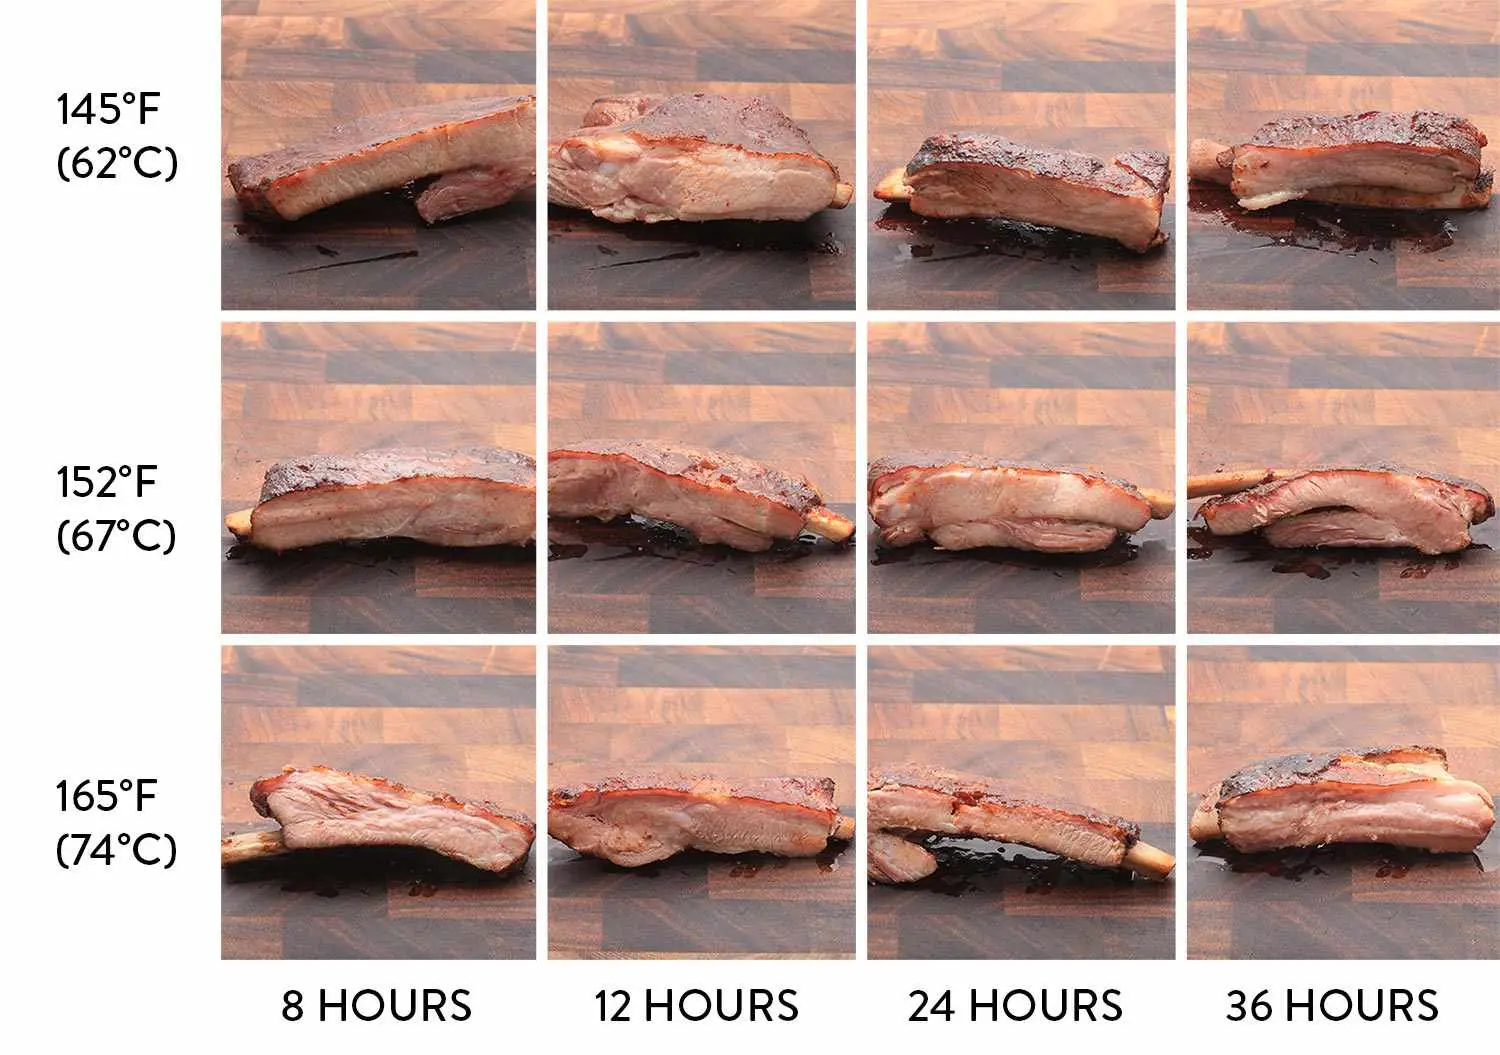 pork ribs smoked temp - Are pork ribs done at 160 degrees